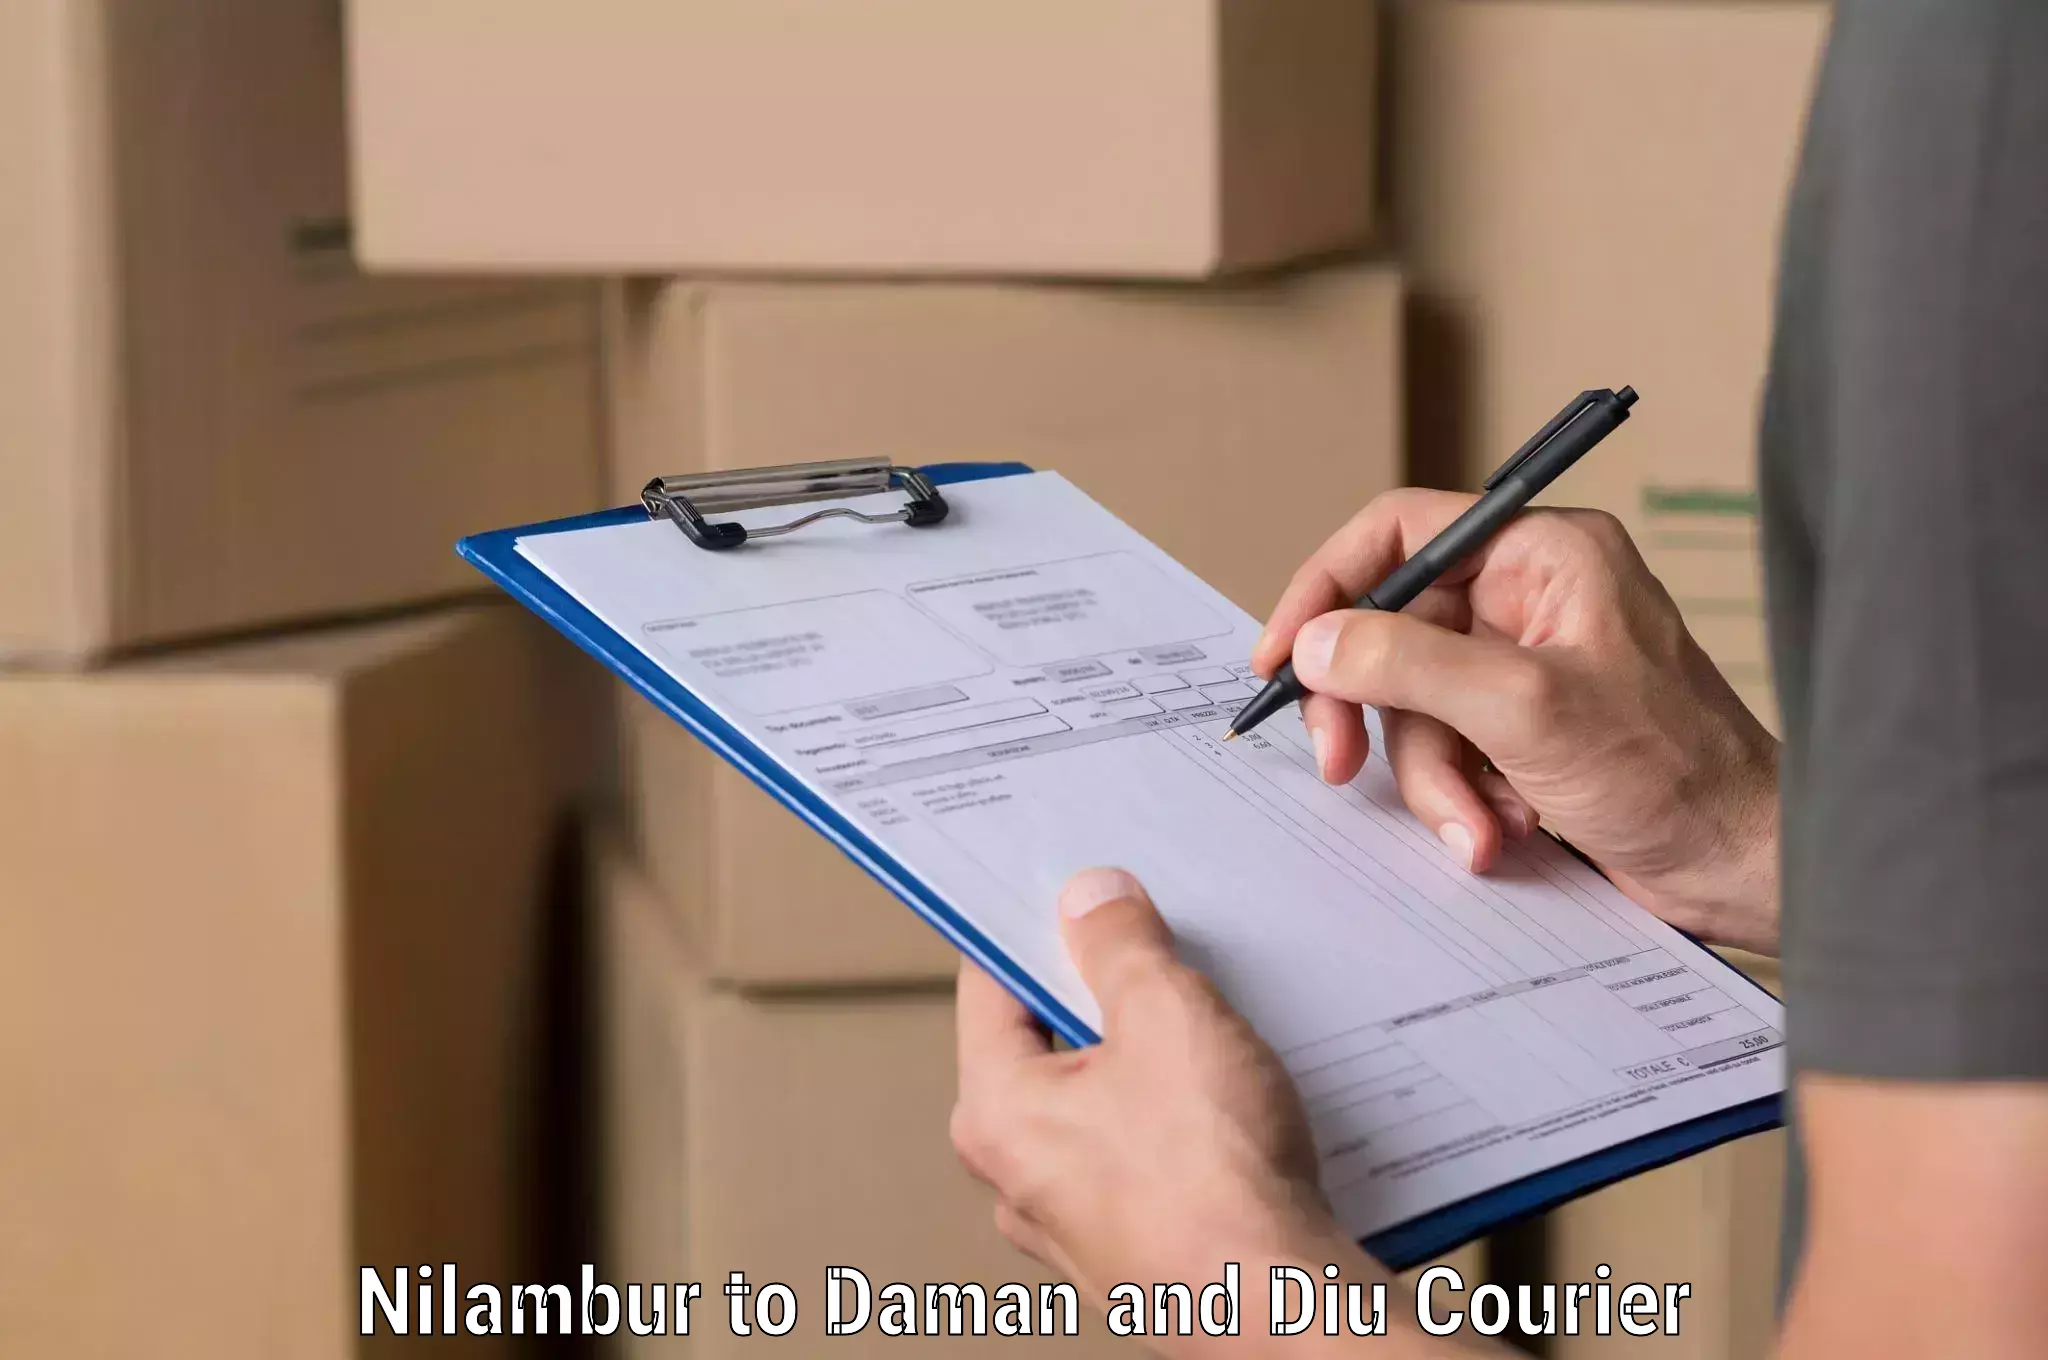 Seamless shipping service Nilambur to Daman and Diu